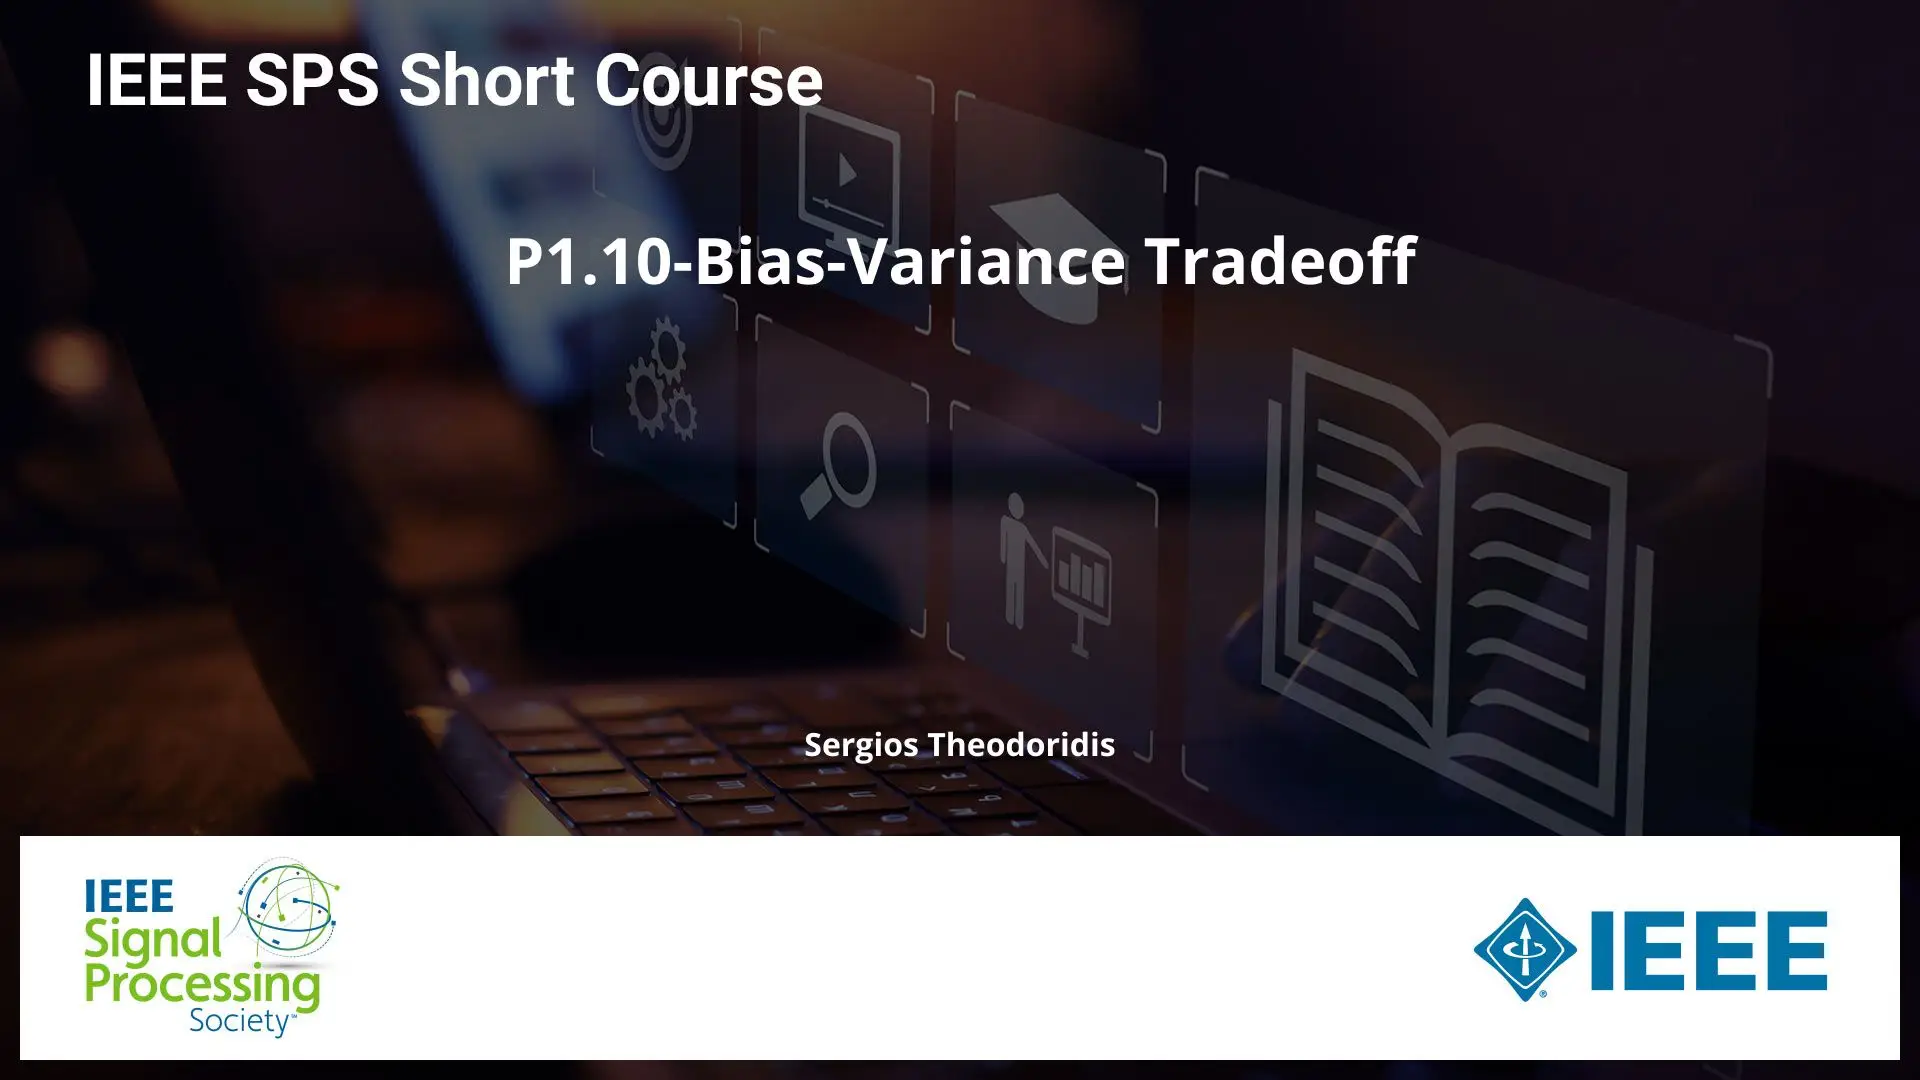 P1.10-Bias-Variance Tradeoff